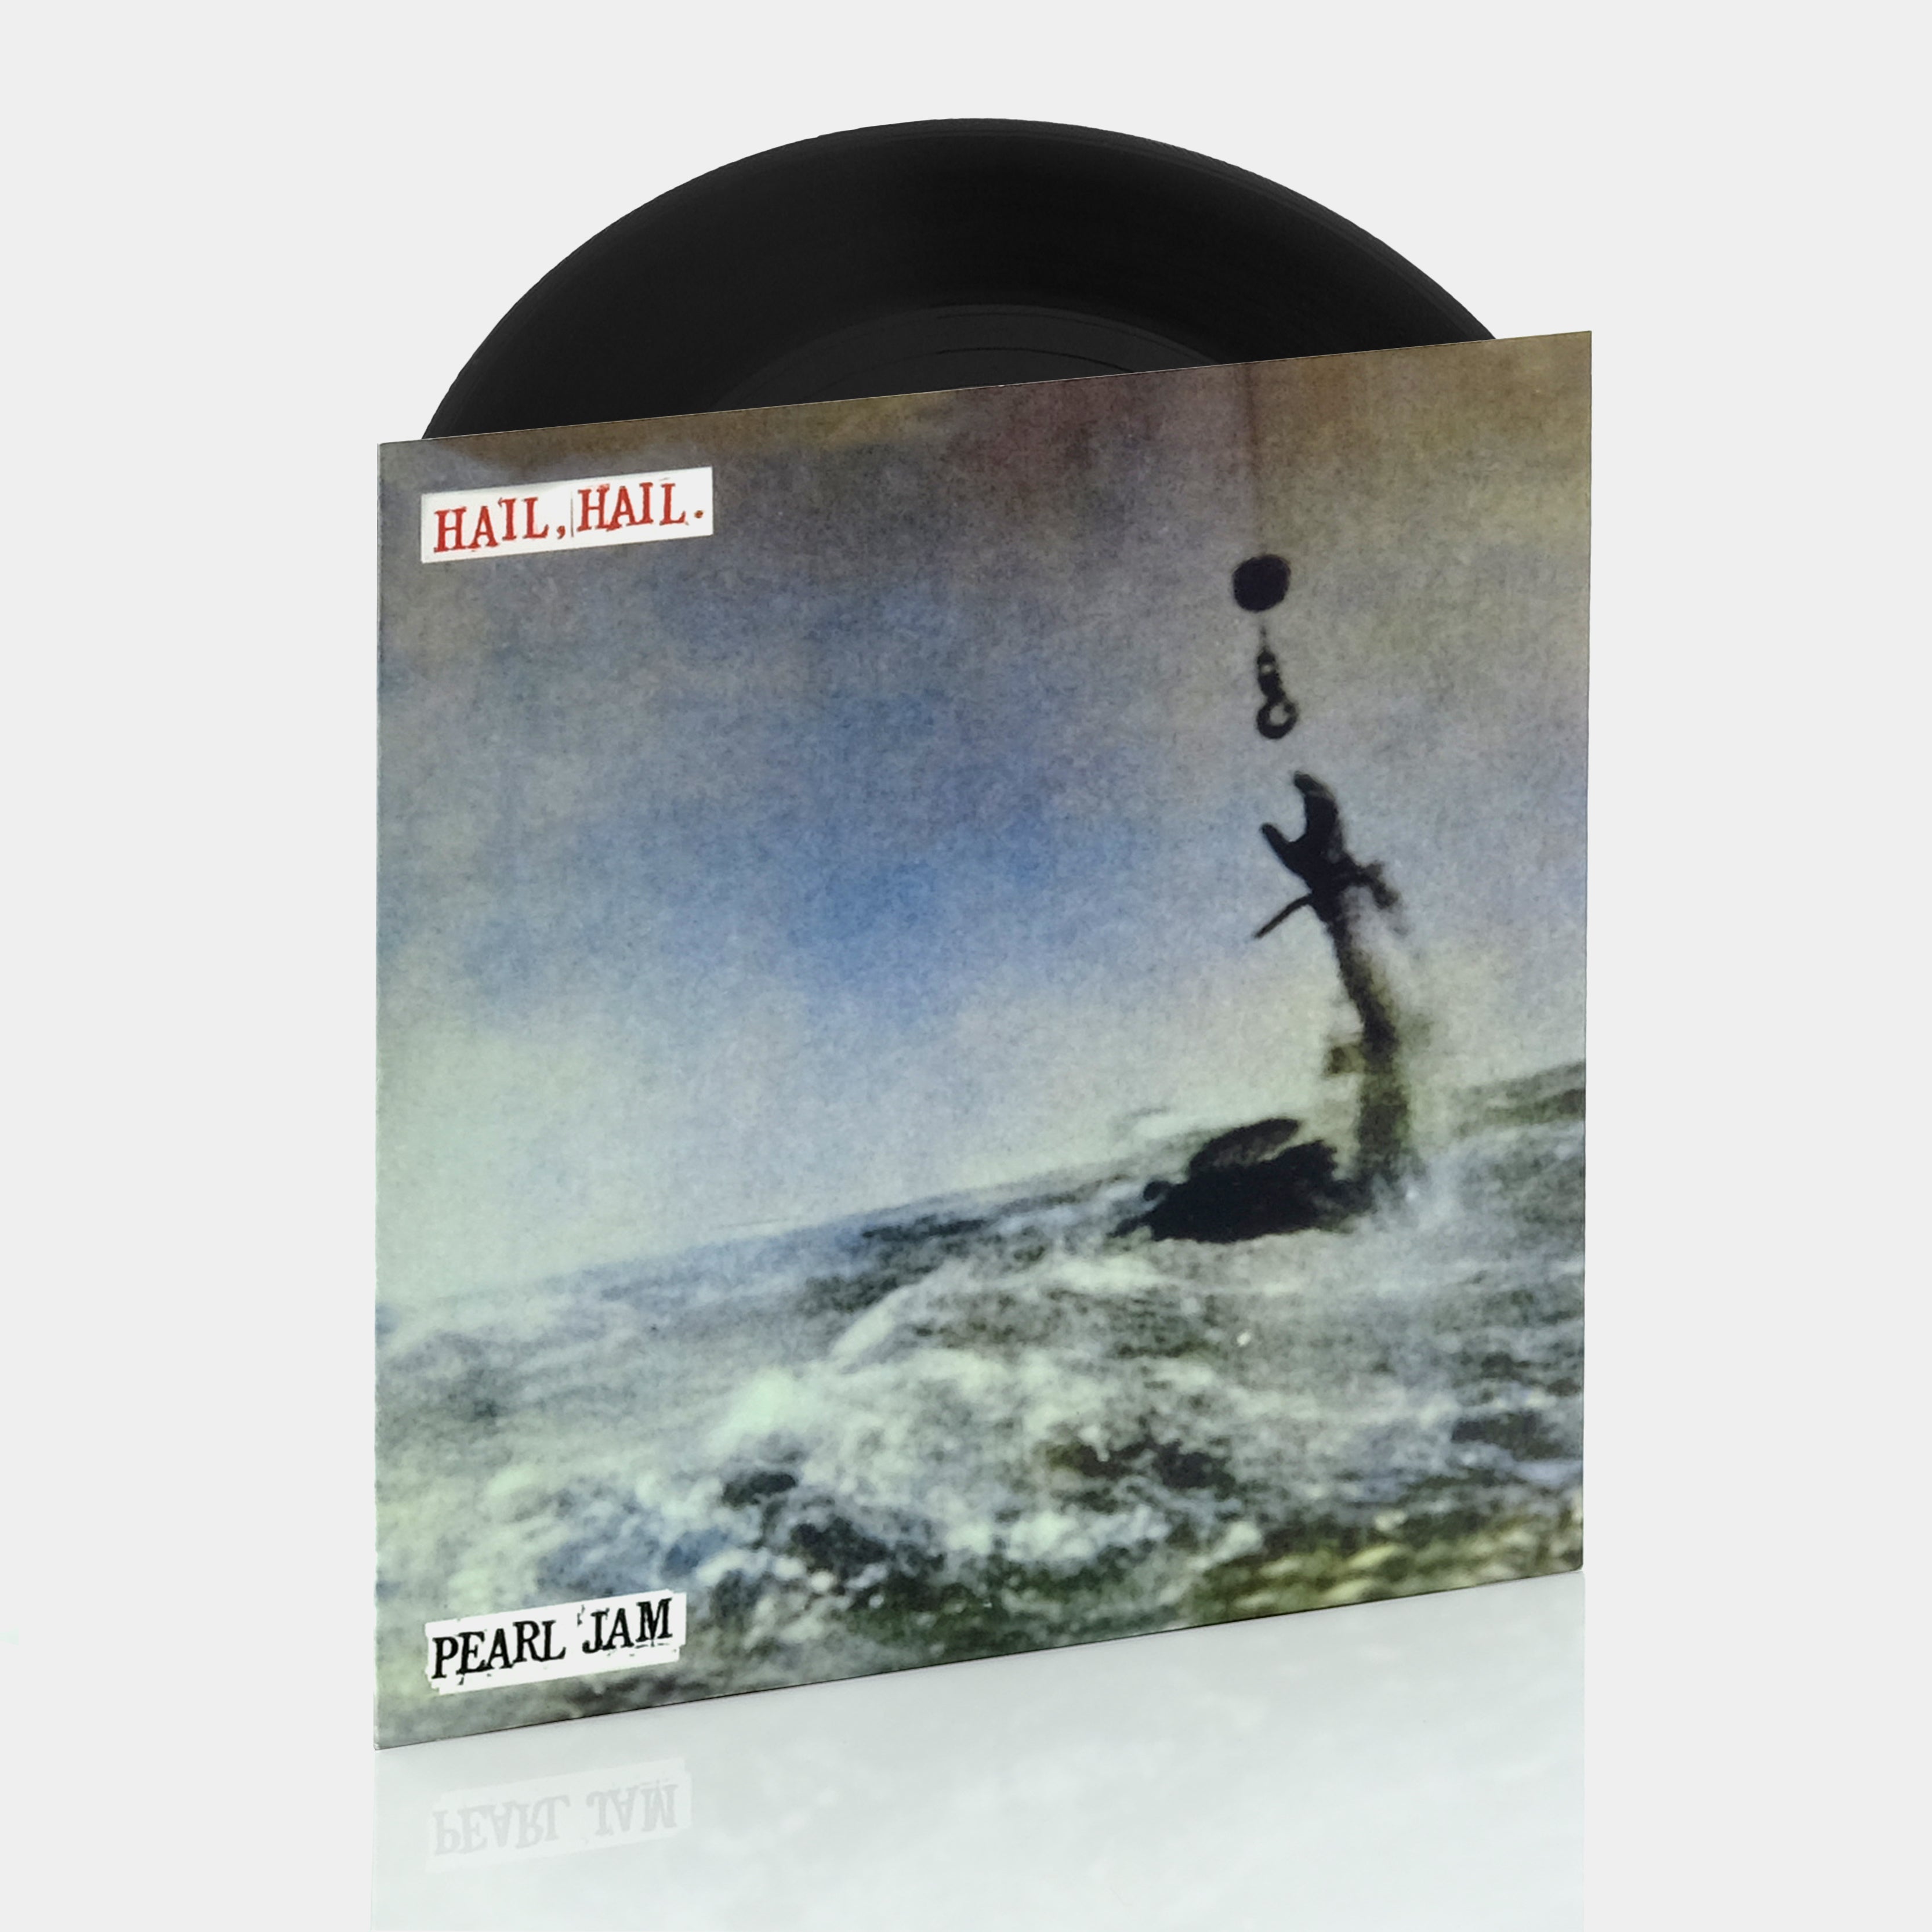 Pearl Jam - Hail, Hail 7" Single Vinyl Record